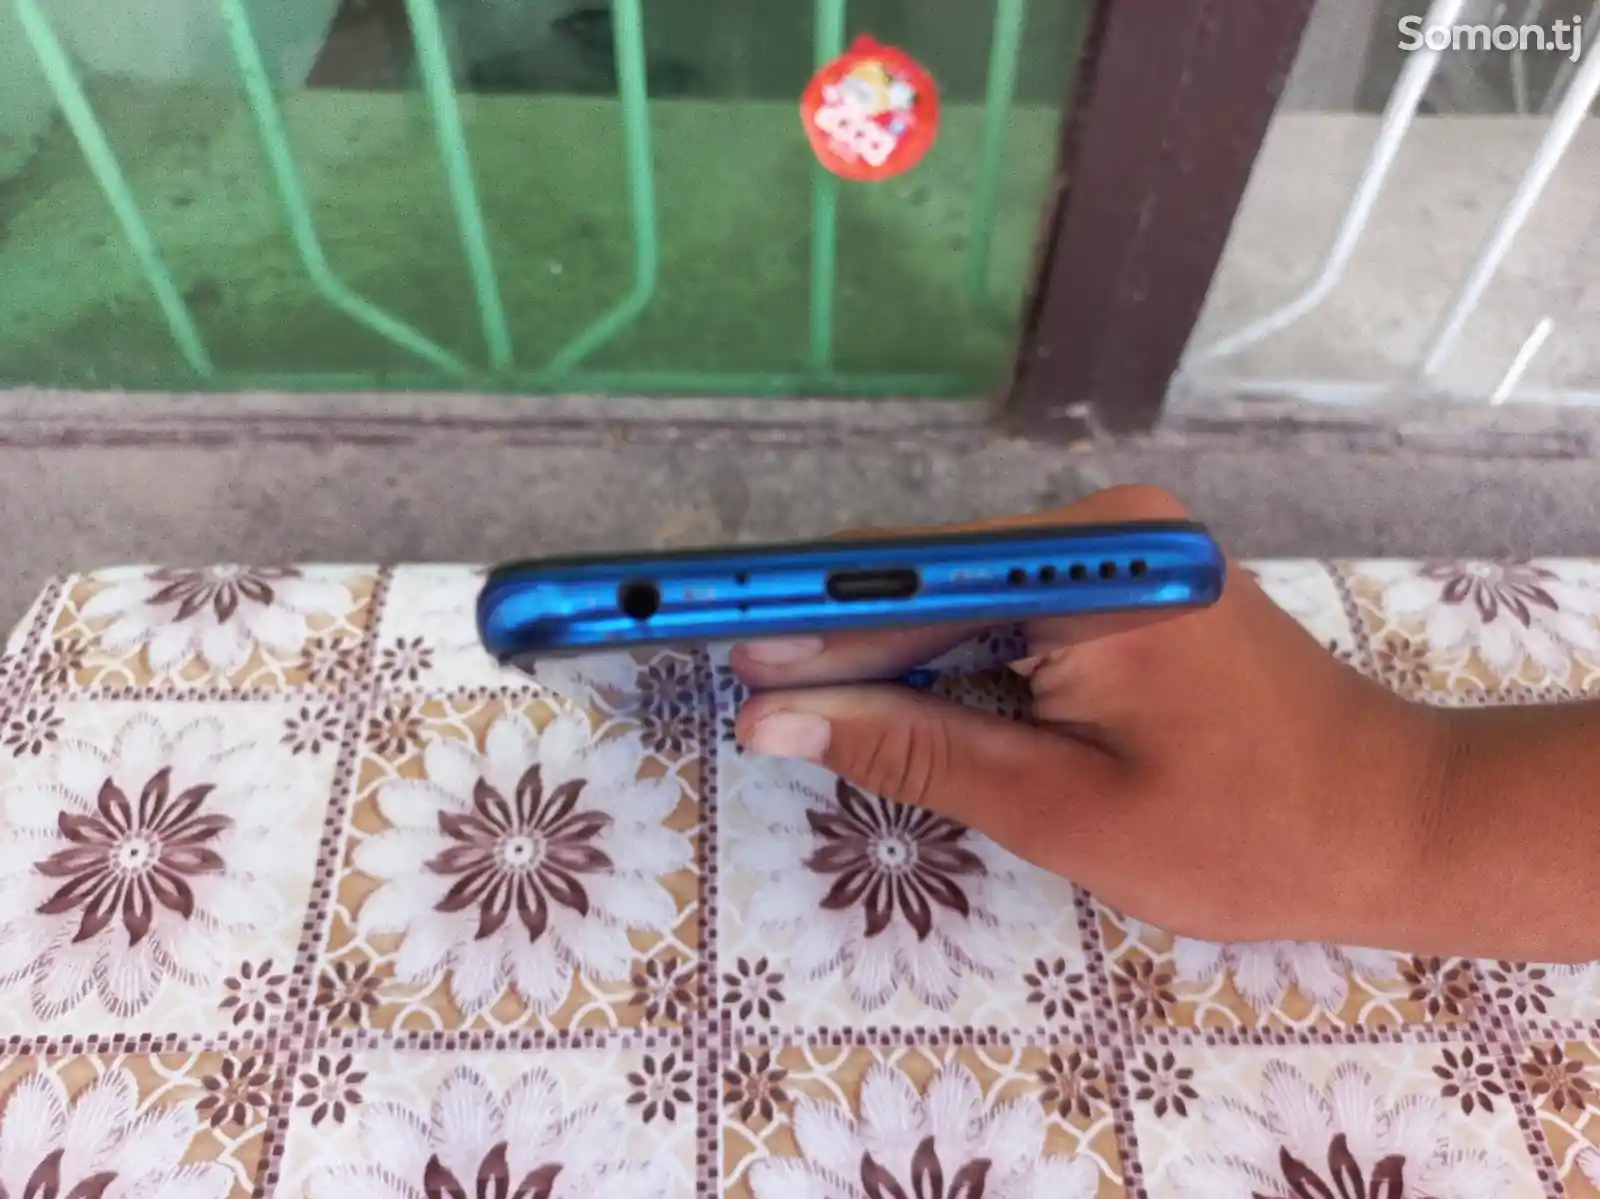 Xiaomi Redmi Note 8-4